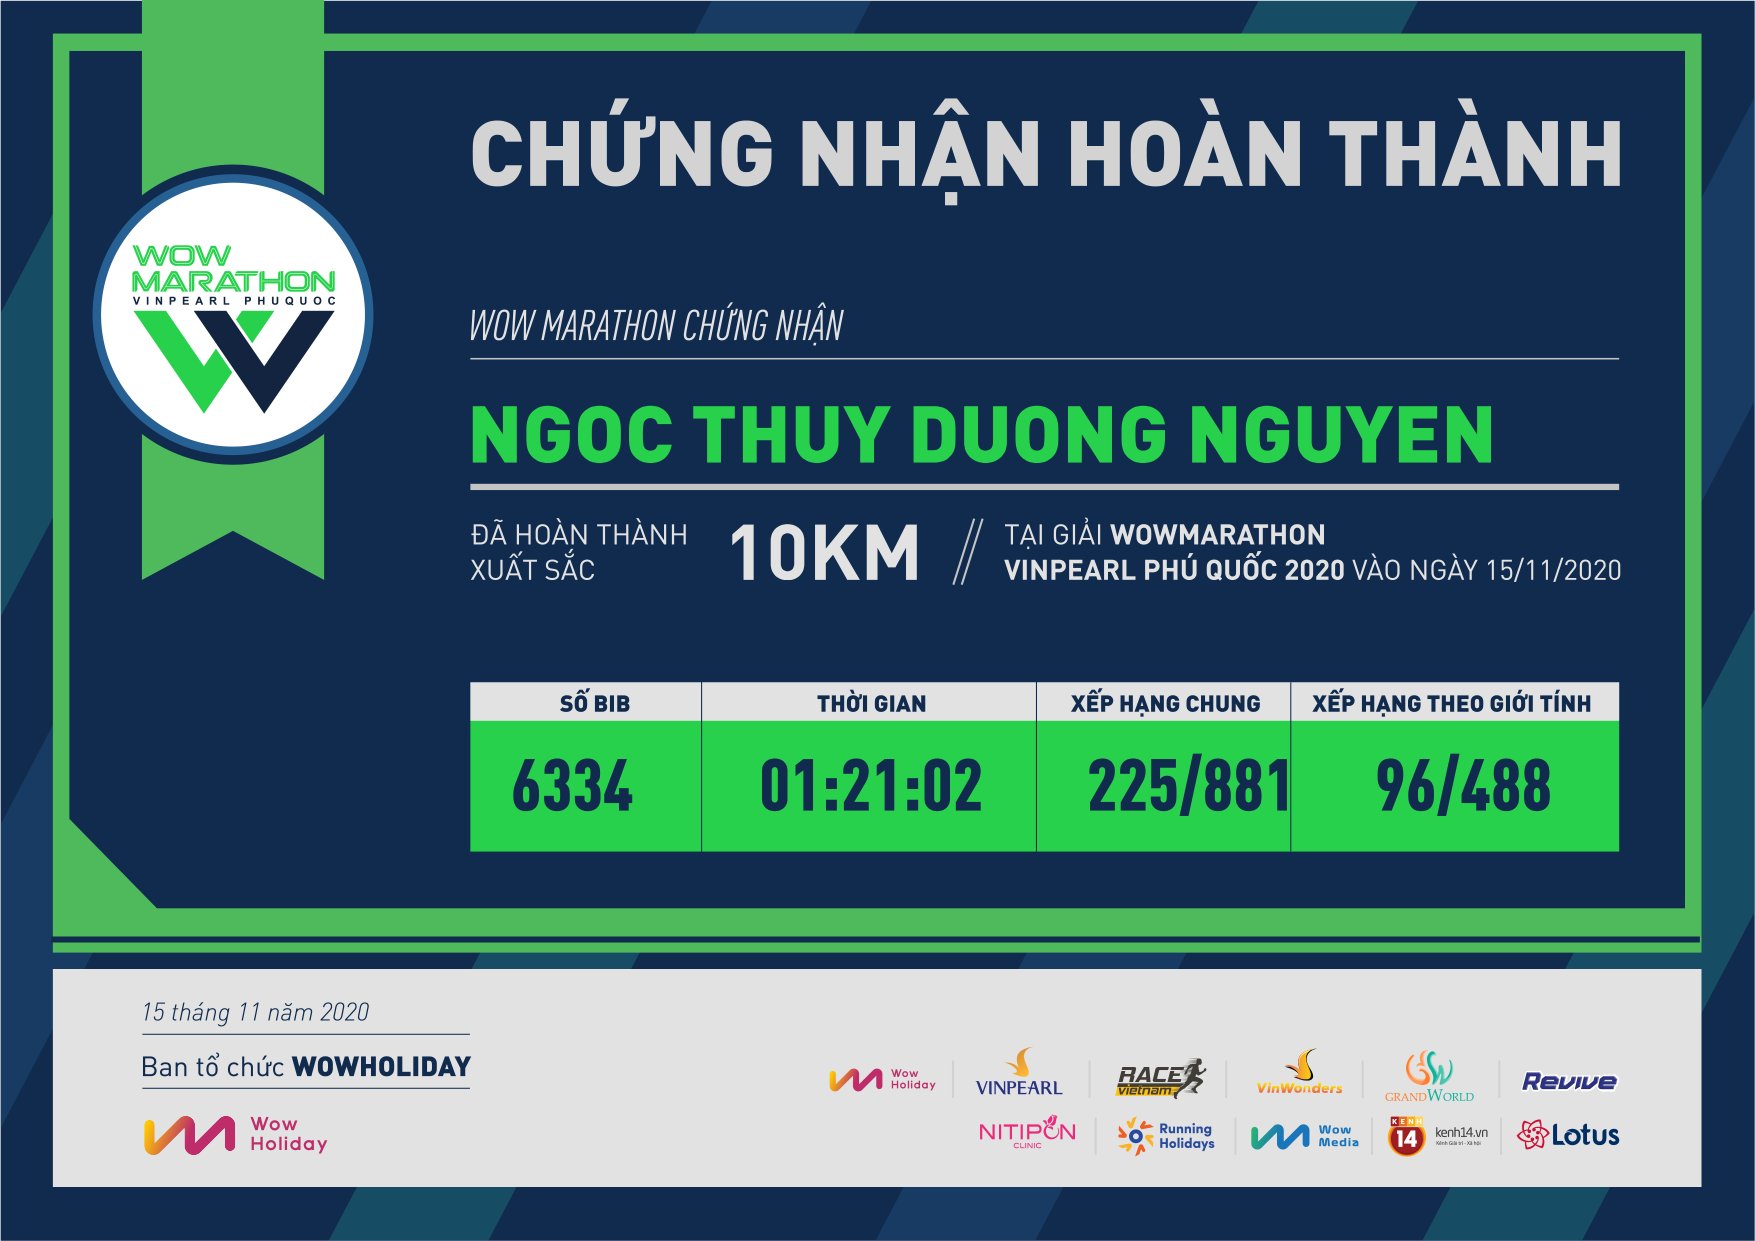 6334 - Ngoc Thuy Duong Nguyen